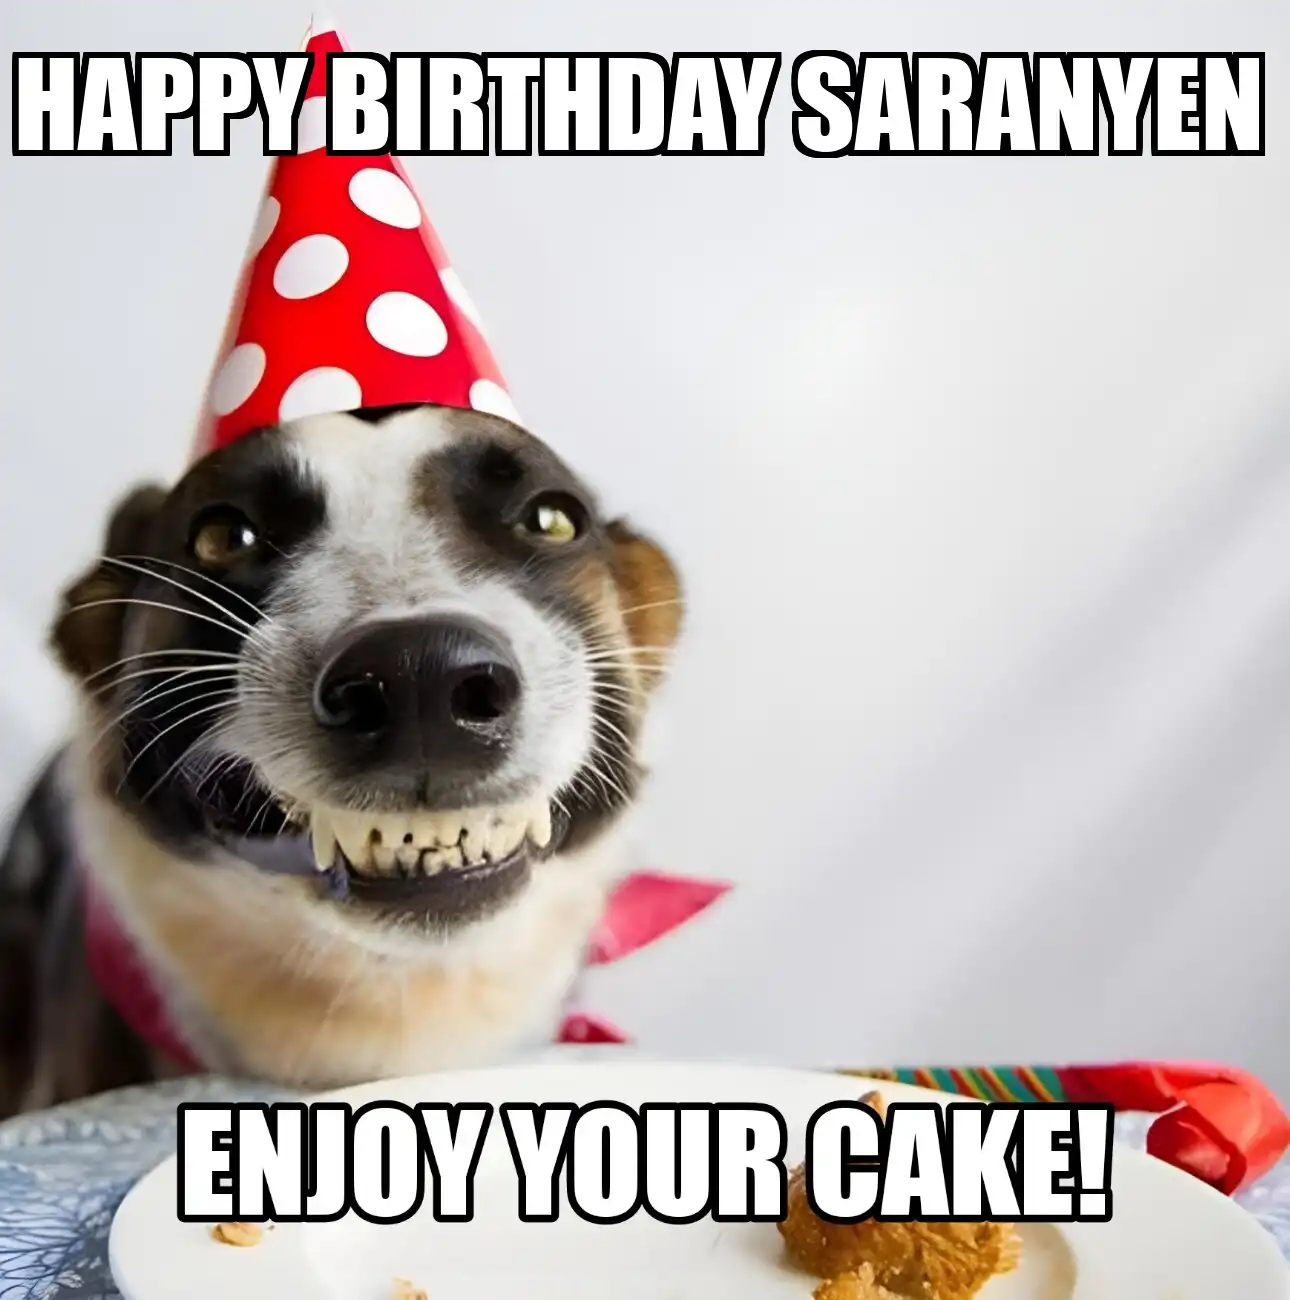 Happy Birthday Saranyen Enjoy Your Cake Dog Meme